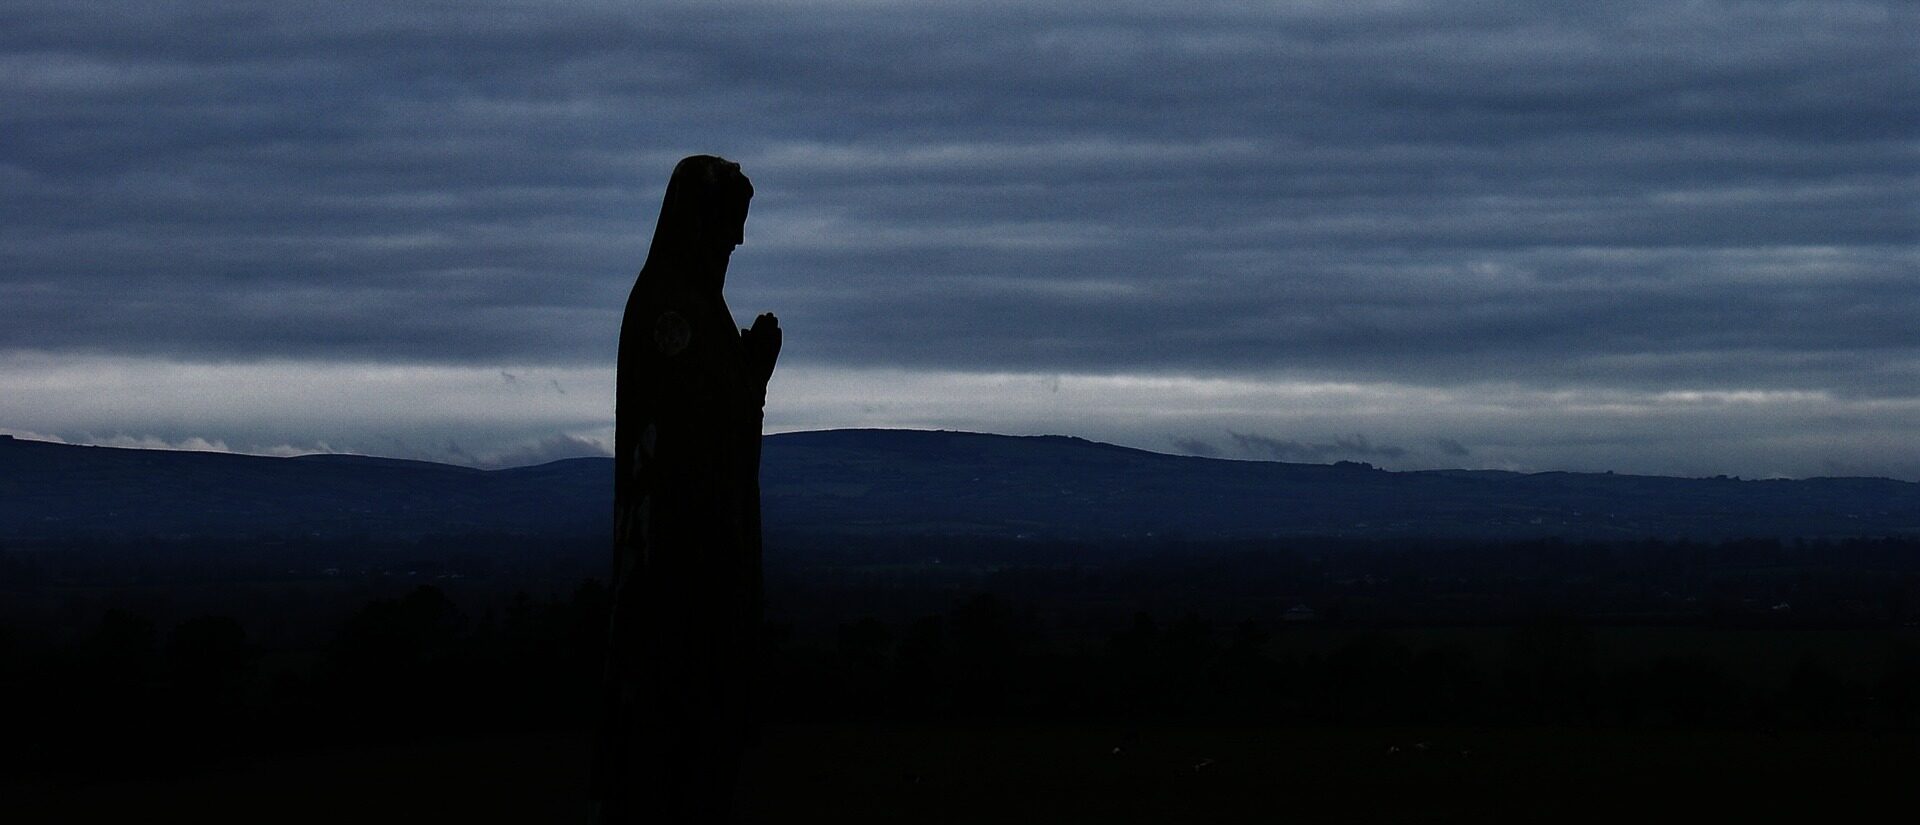 La figure de la Vierge Marie est souvent détournée à des fin non chrétiennes (Photo:Free-Photos sur Pixabay)